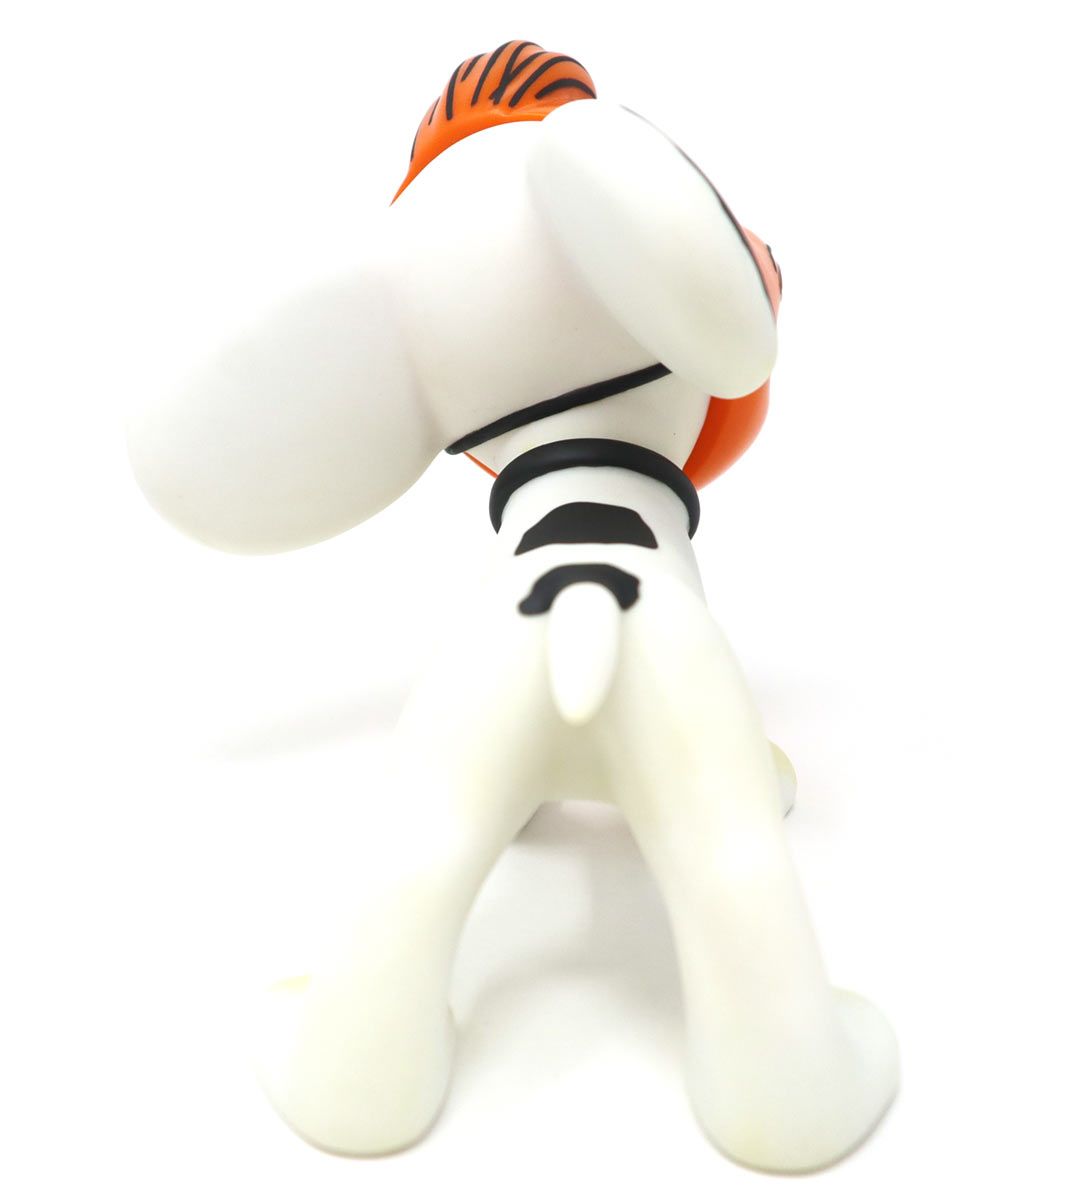 Figurine VCD 50's Peanuts - Snoopy avec un masque orange